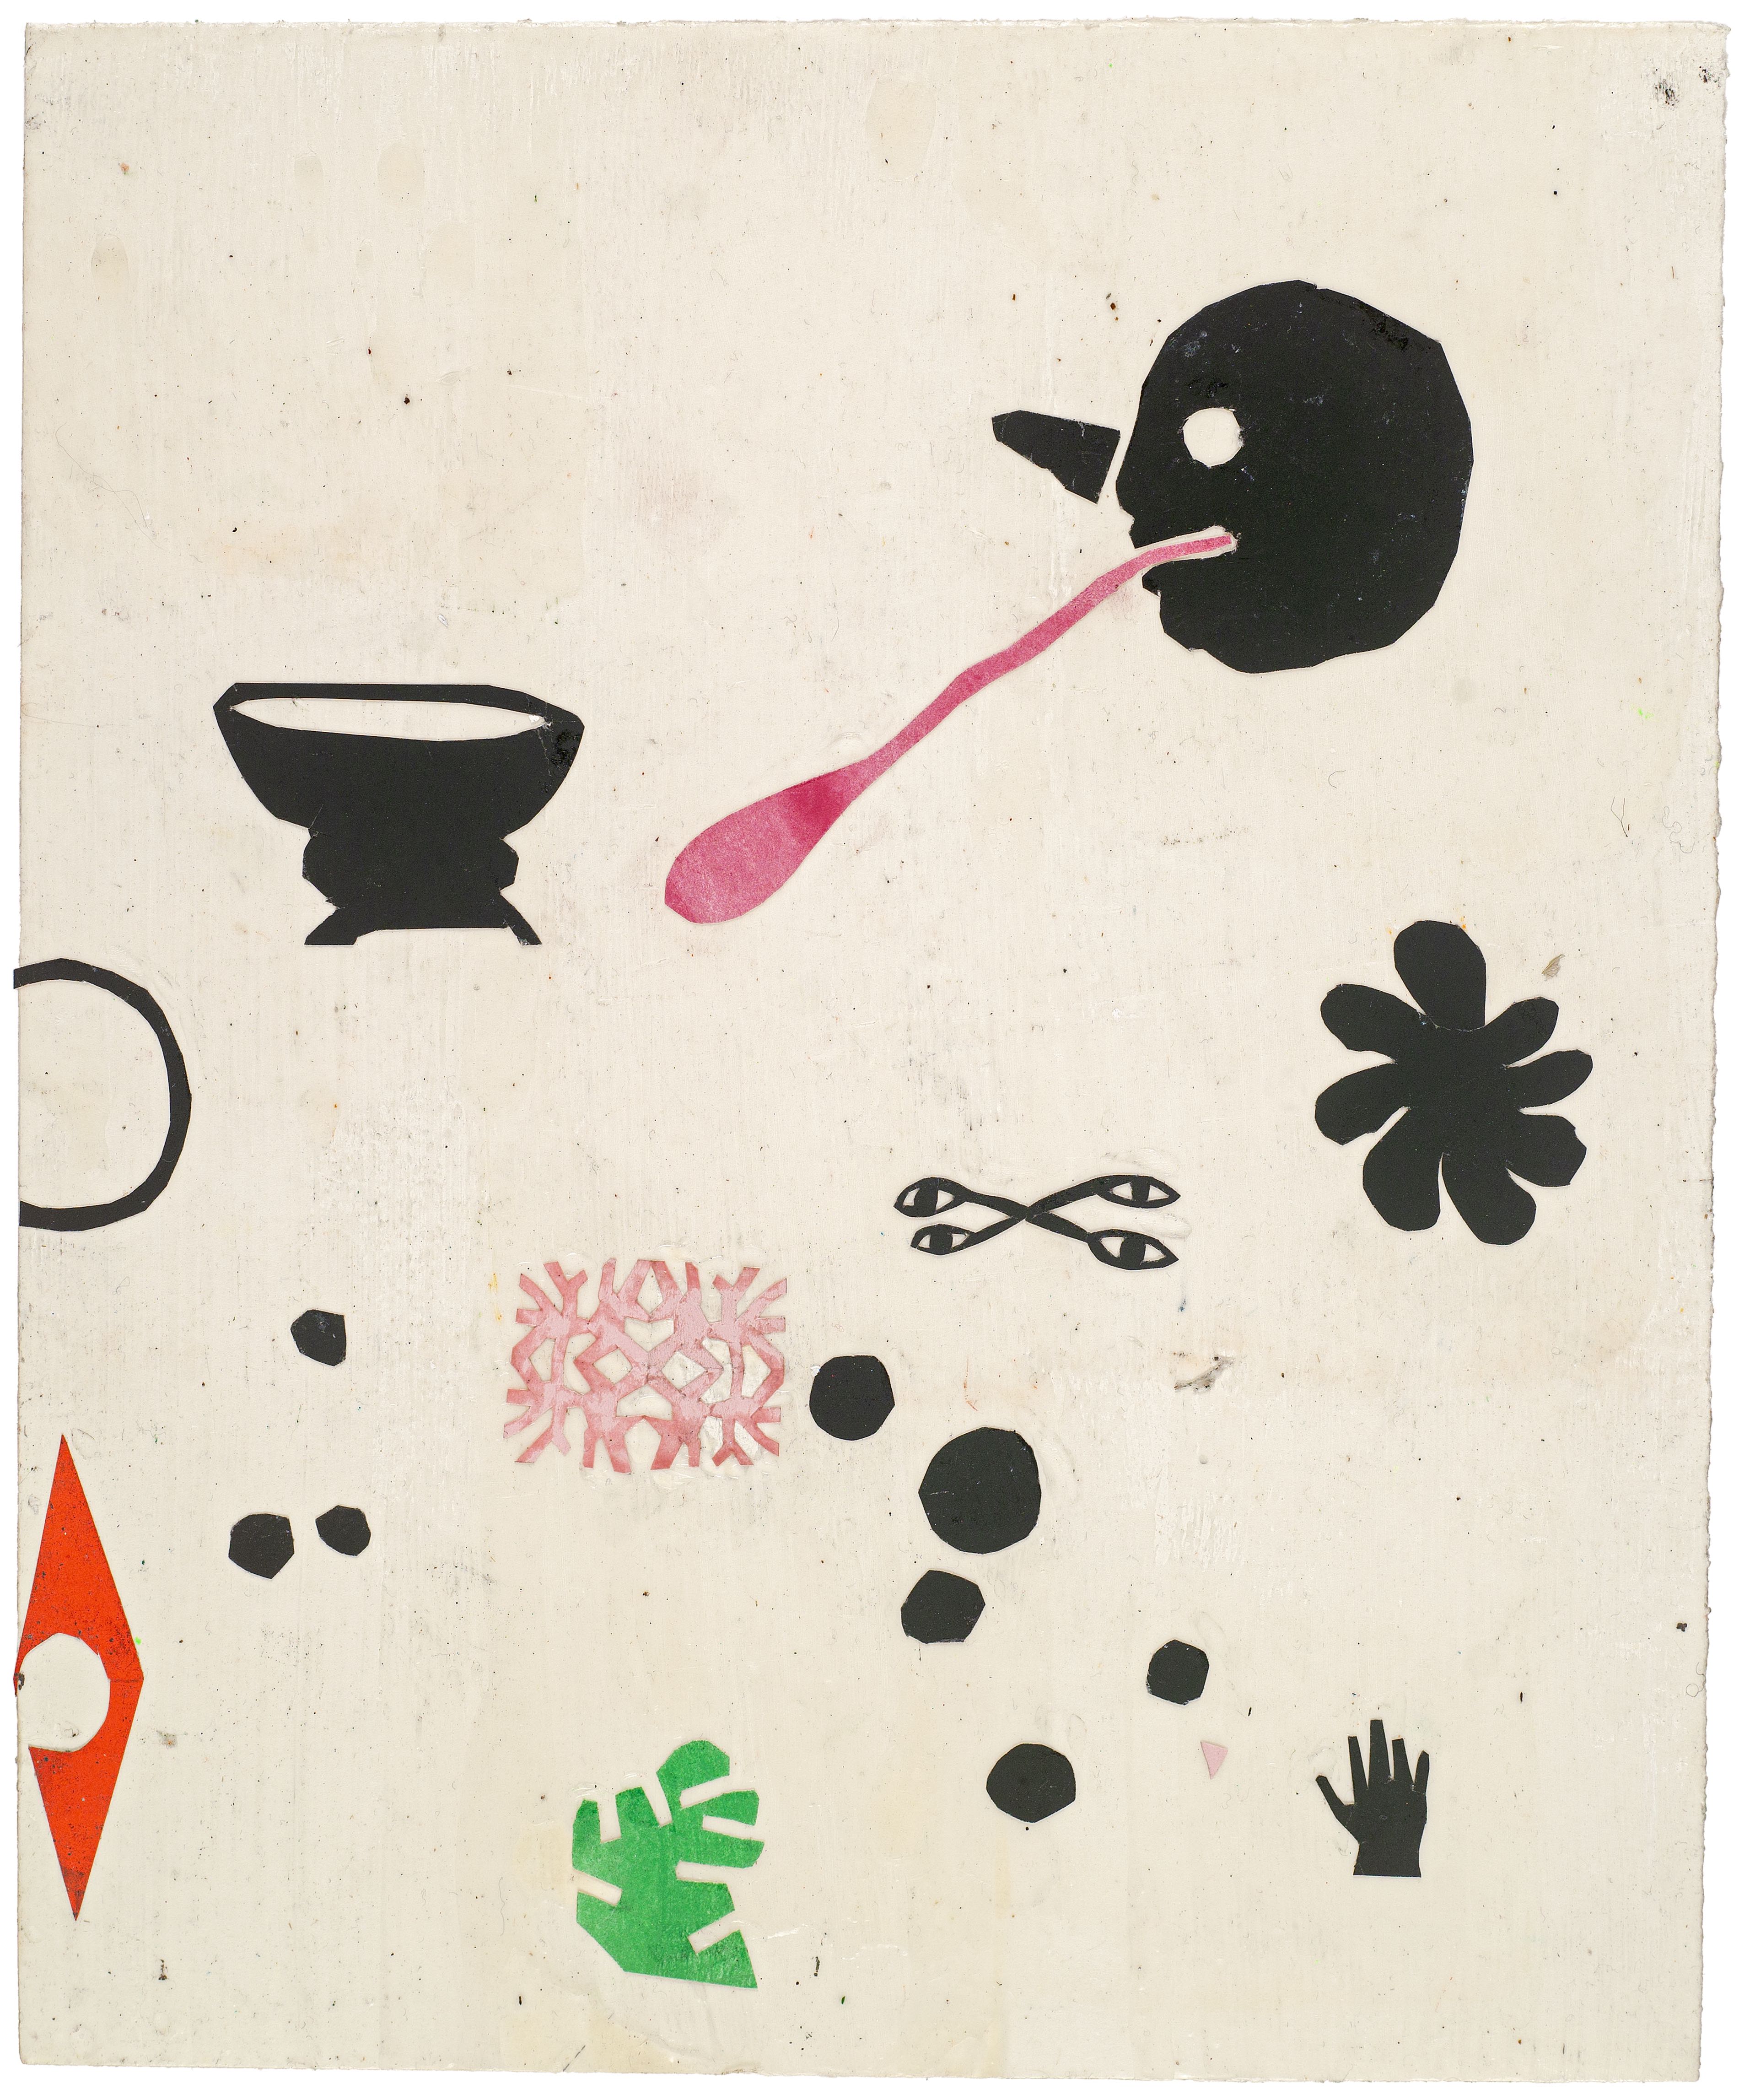 Martin Assig, Seelen #67a, Gouache, wax, paper, 30,5x25 cm, 2020